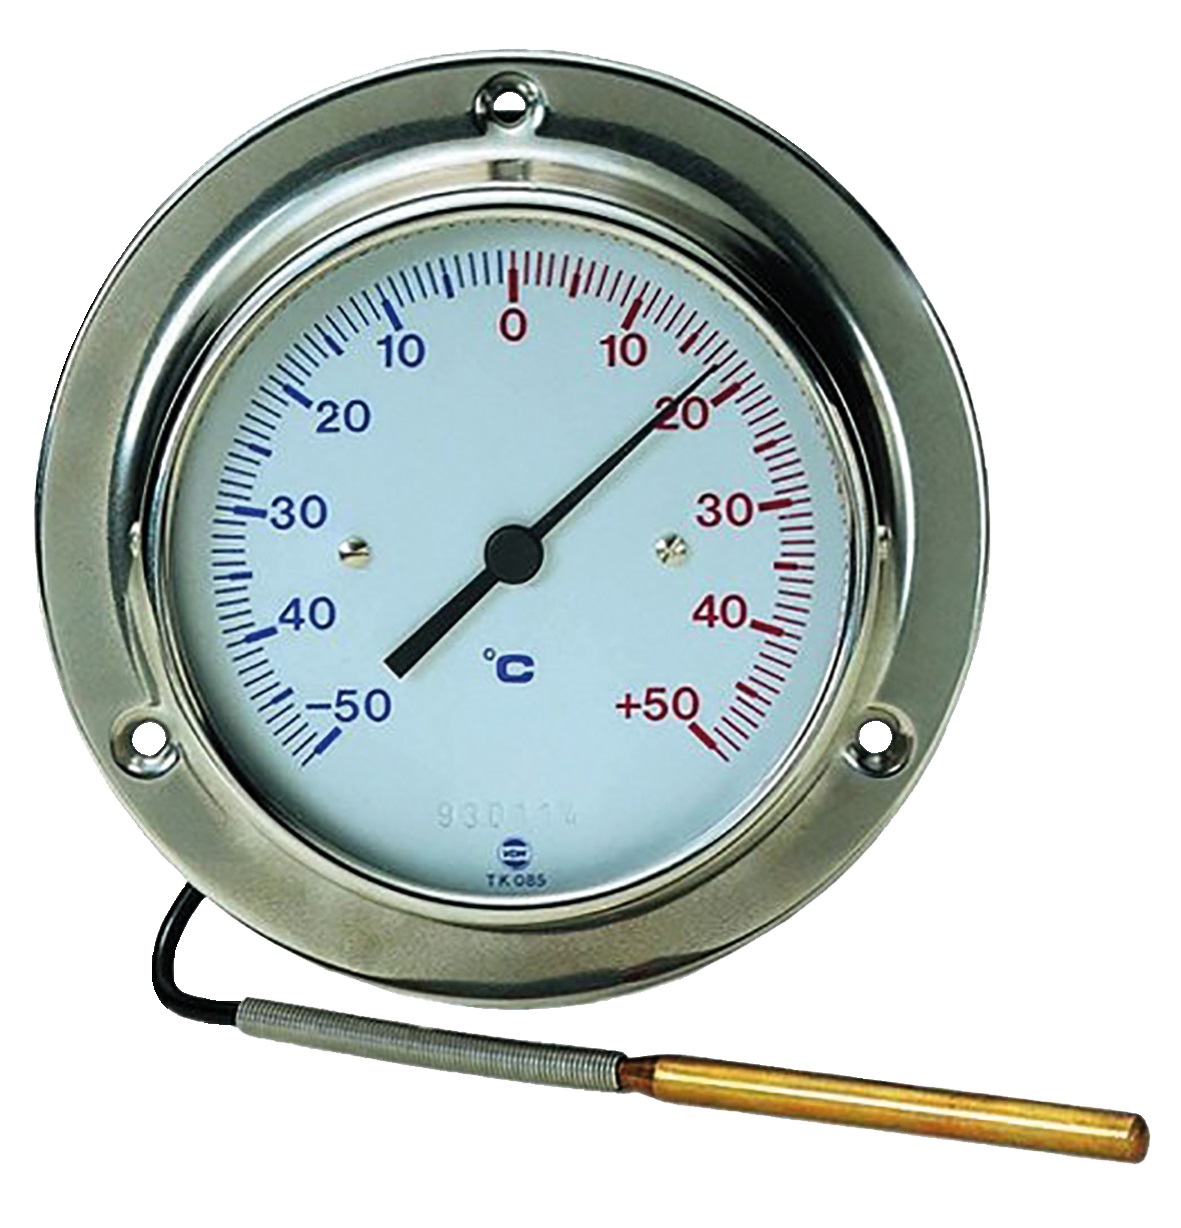 6901002 Wijzerthermometer TK 085 diam. 100 mm met onder-/achteraansluiting schaalbereik -50/+50 gr. C